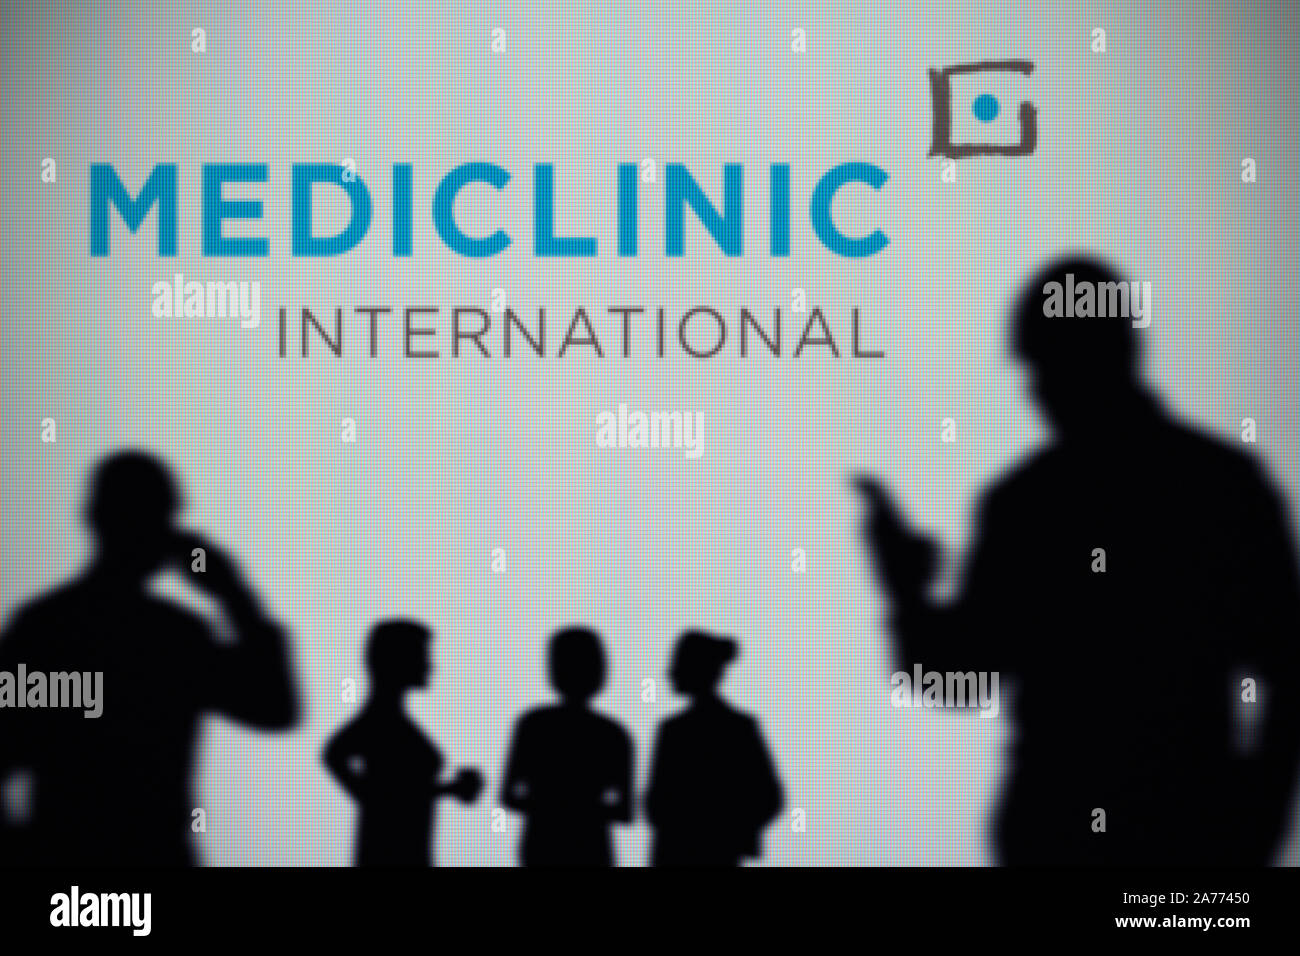 La suite Médiclinic logo international est vu sur un écran LED à l'arrière-plan tandis qu'une silhouette personne utilise un smartphone (usage éditorial uniquement) Banque D'Images